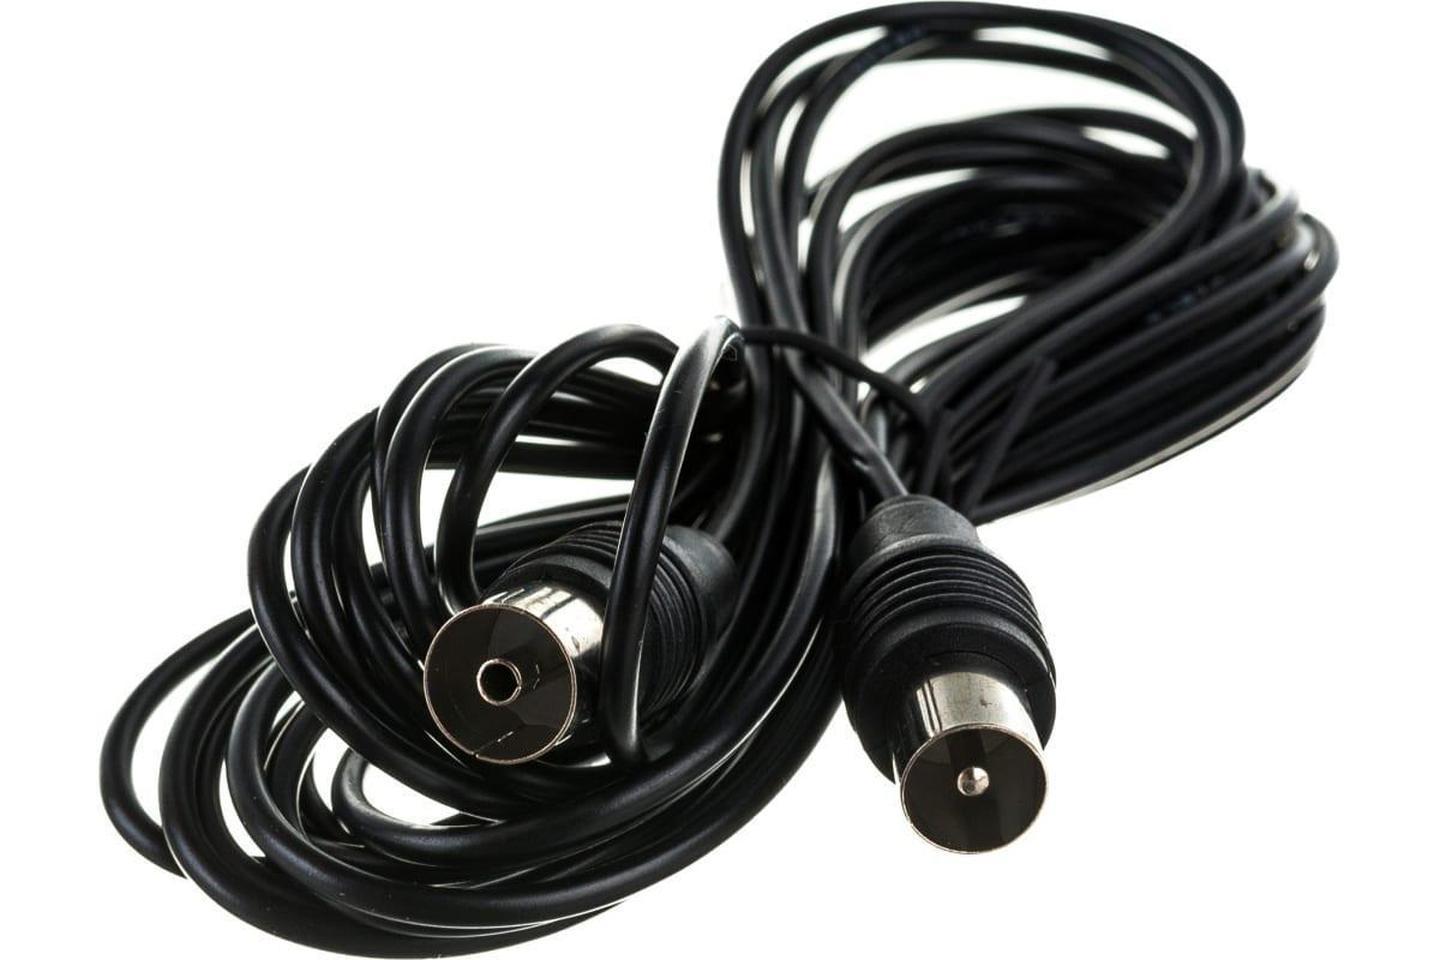 17-5024, ВЧ кабель ТВ штекер - ТВ штекер, длина 5 метров, черный